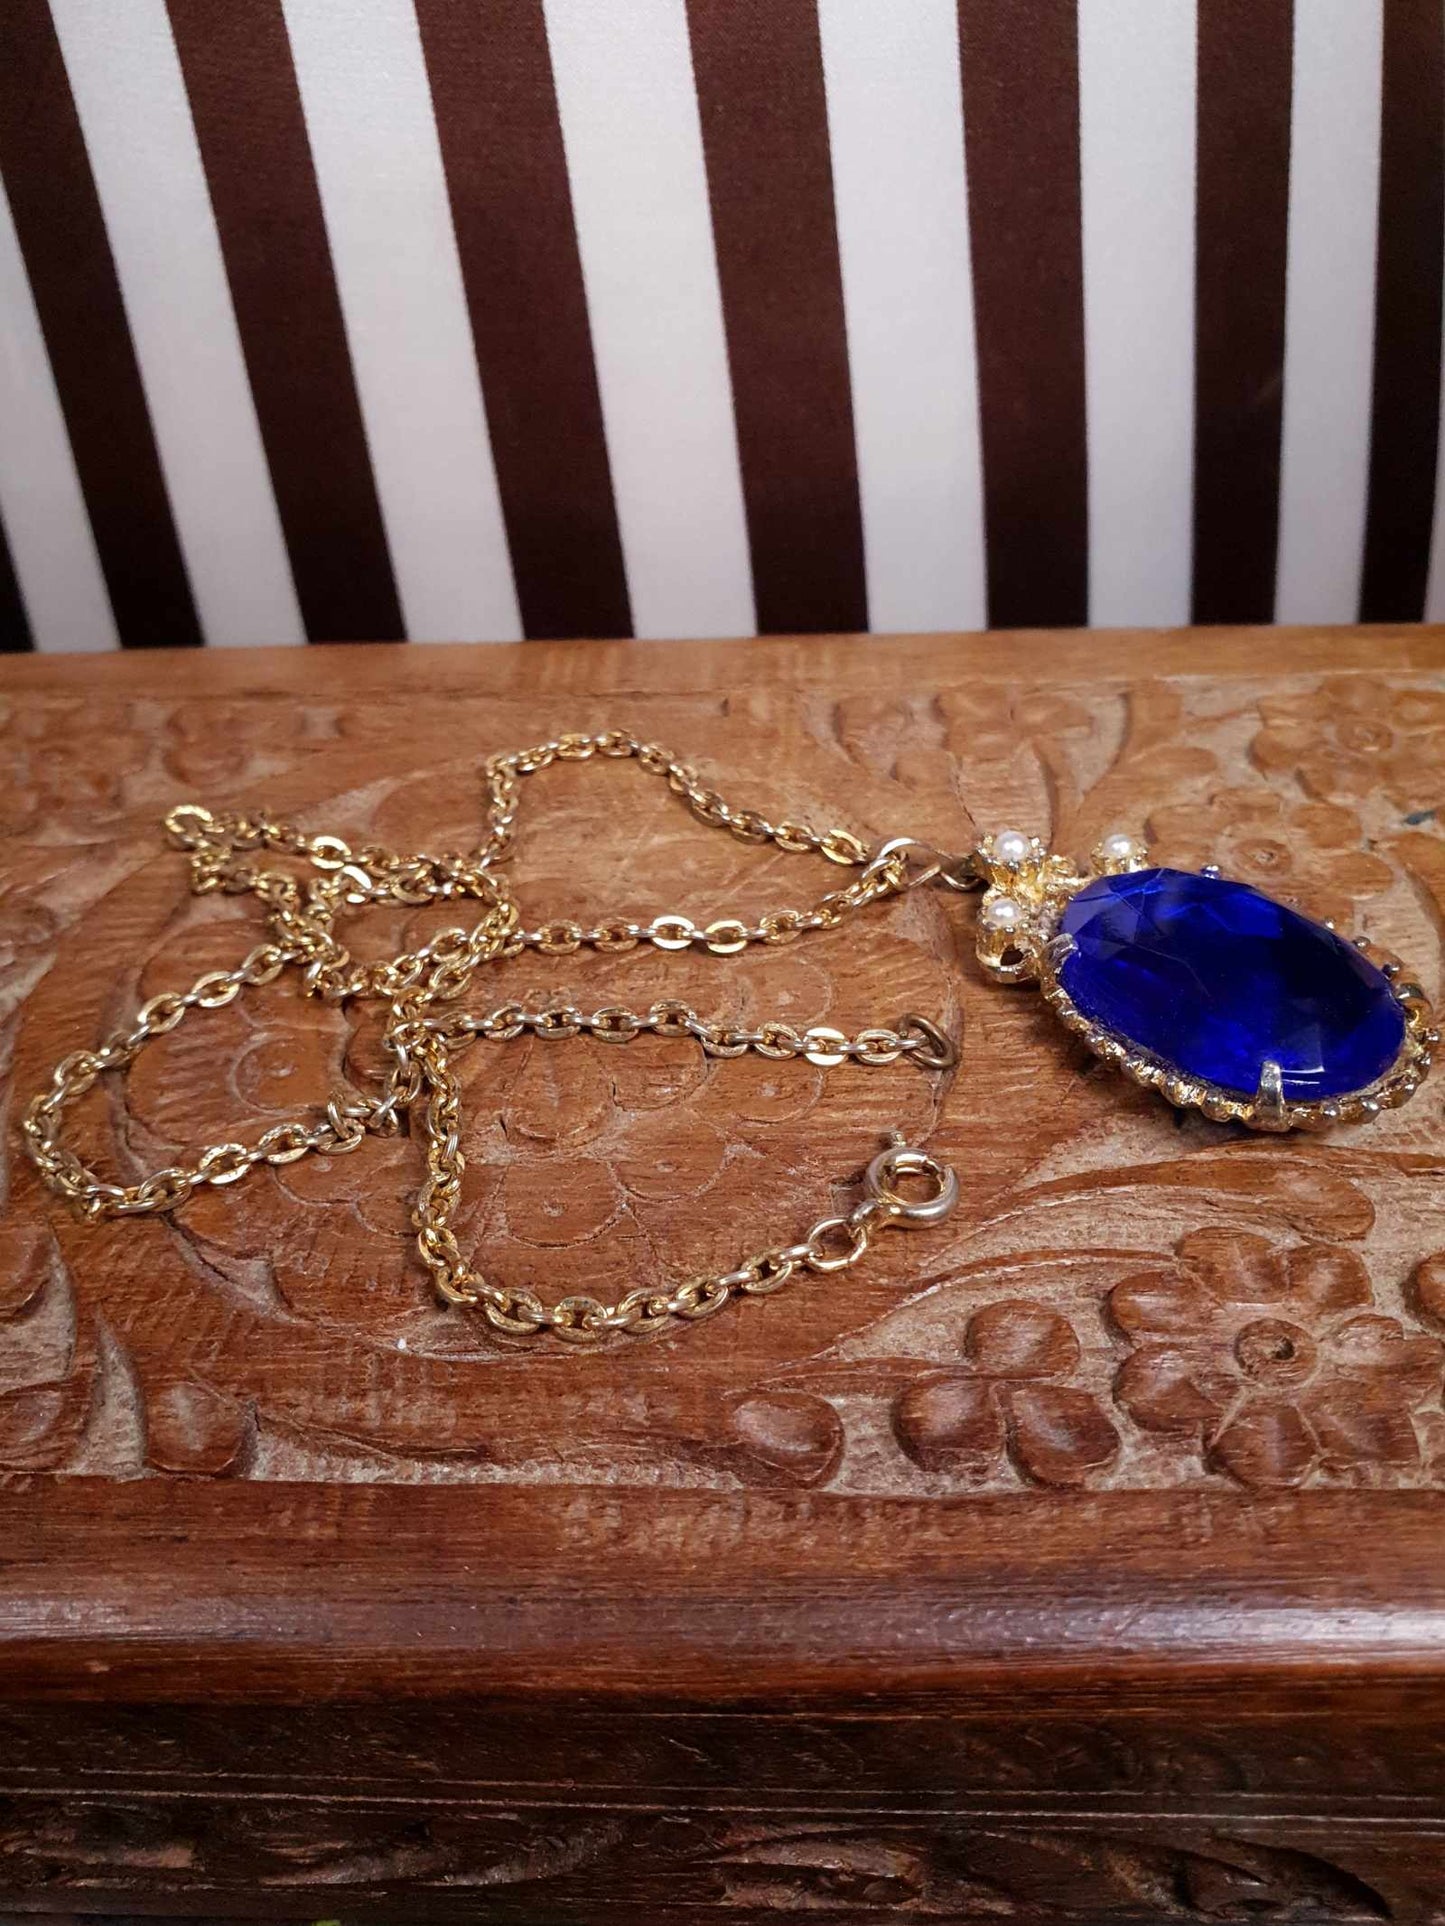 Vintage 1960s Rhinestone Pendant Necklace 18" Cobalt Blue Faux Pearl Gold Tone